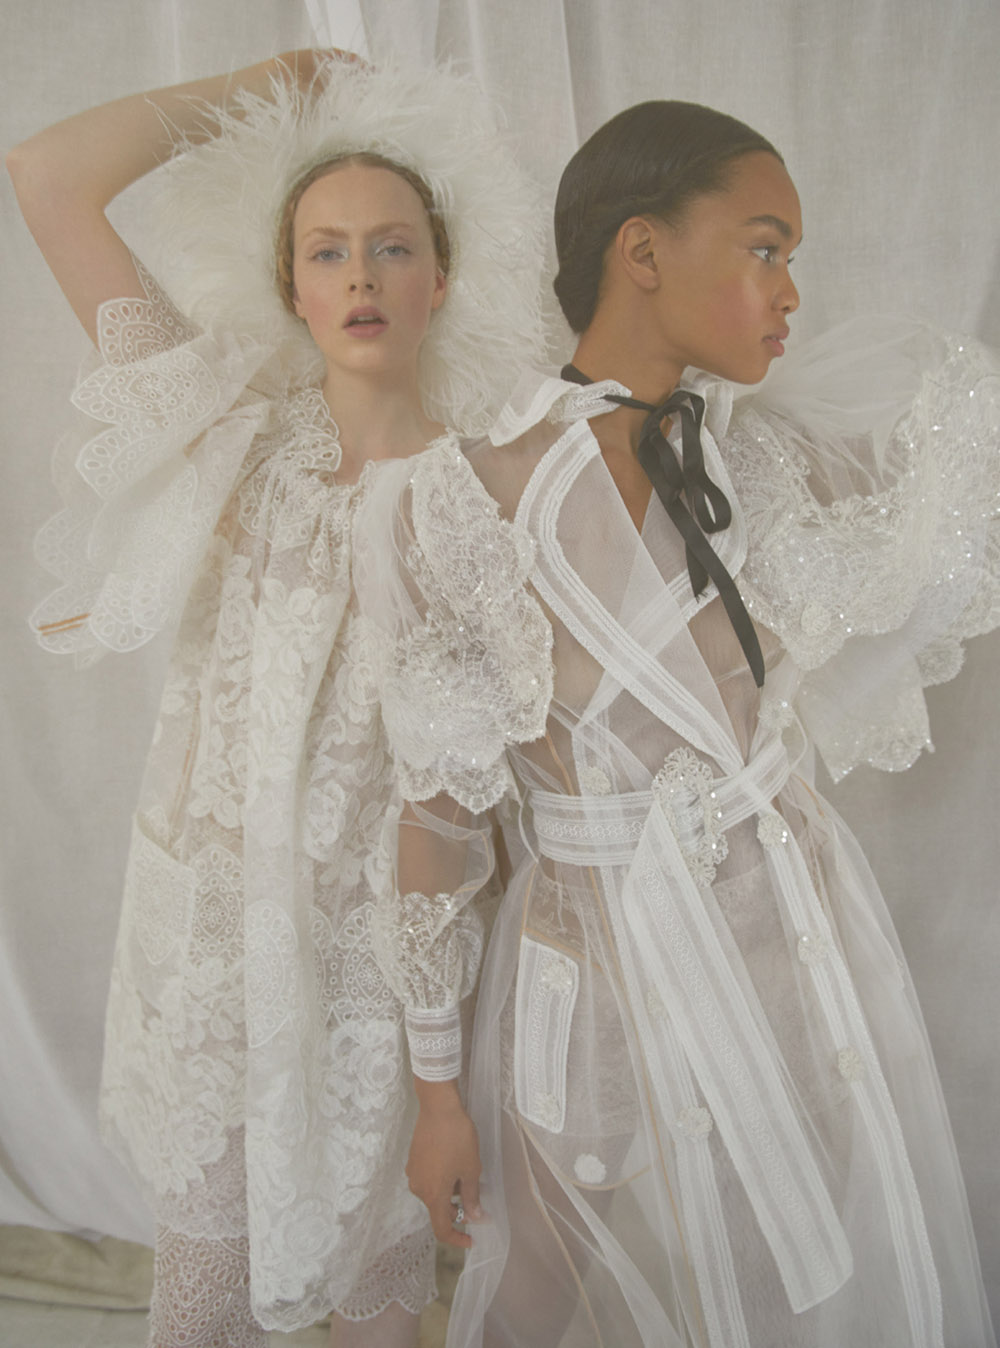 ''Sisterly Seraphim'' by Erik Madigan Heck for Harper’s Bazaar UK June 2020